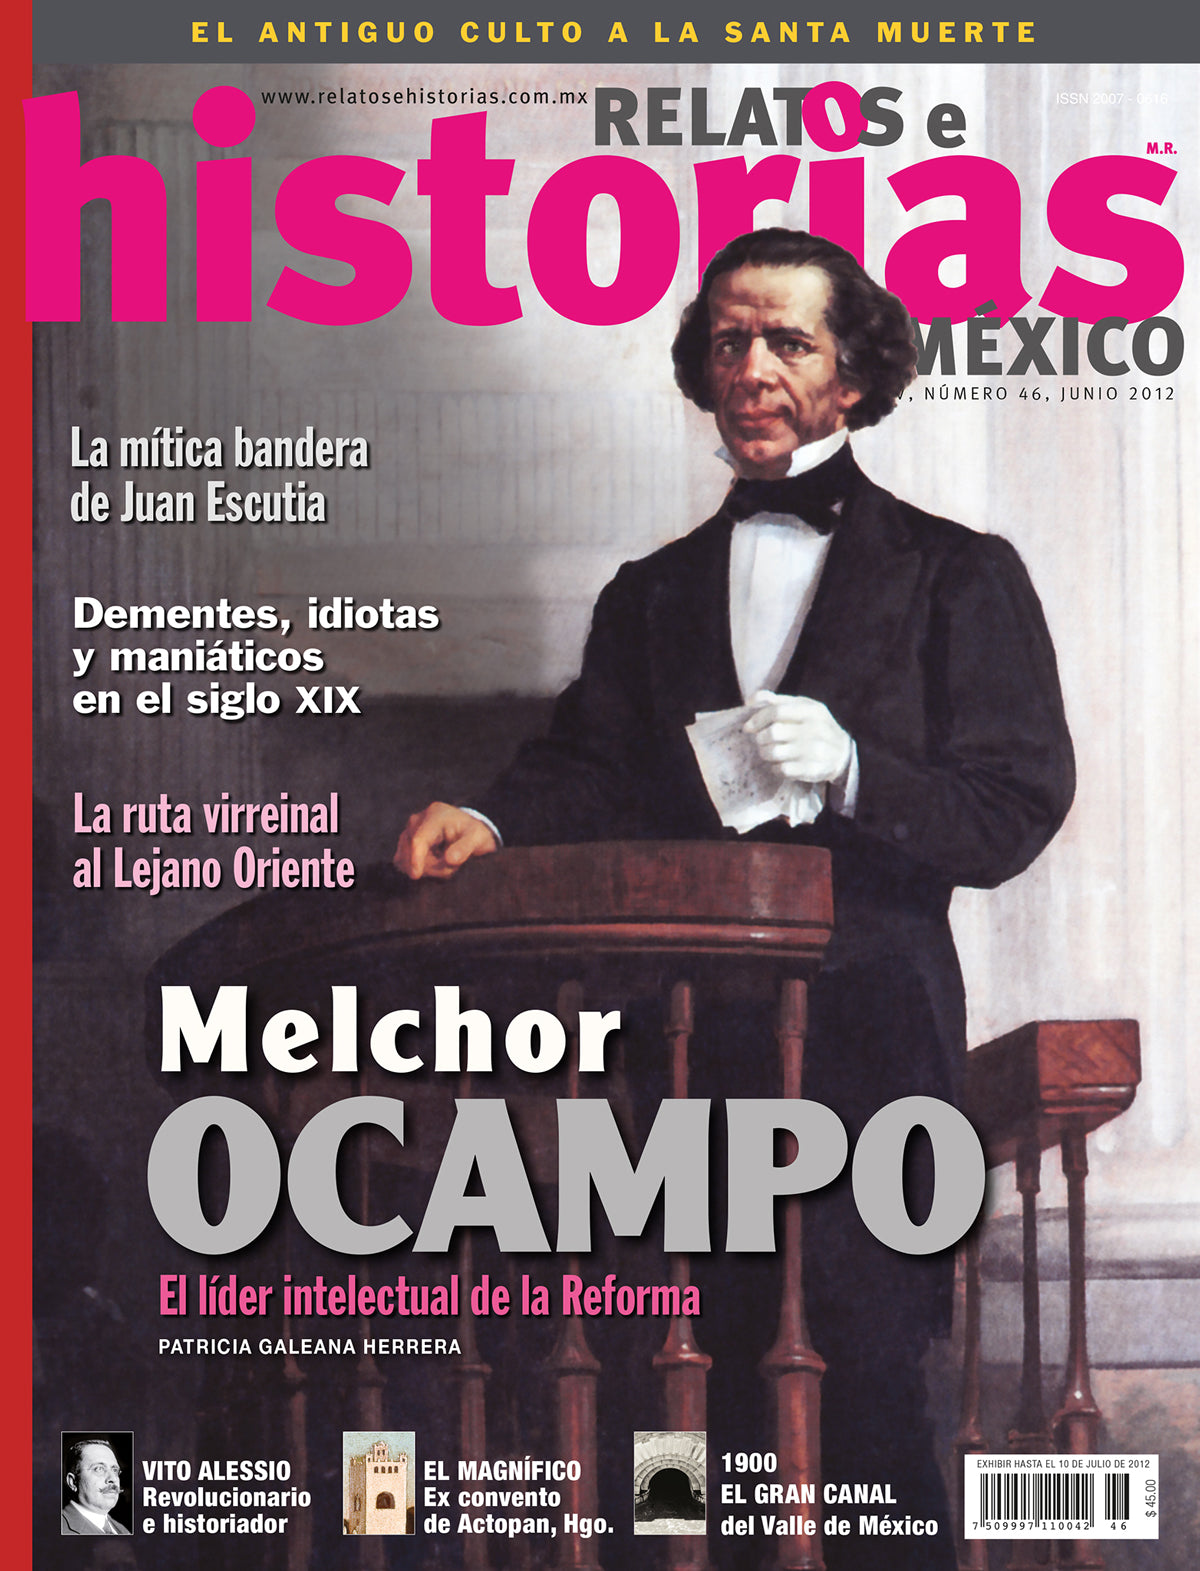 Melchor Ocampo. Líder intelectual de la Reforma